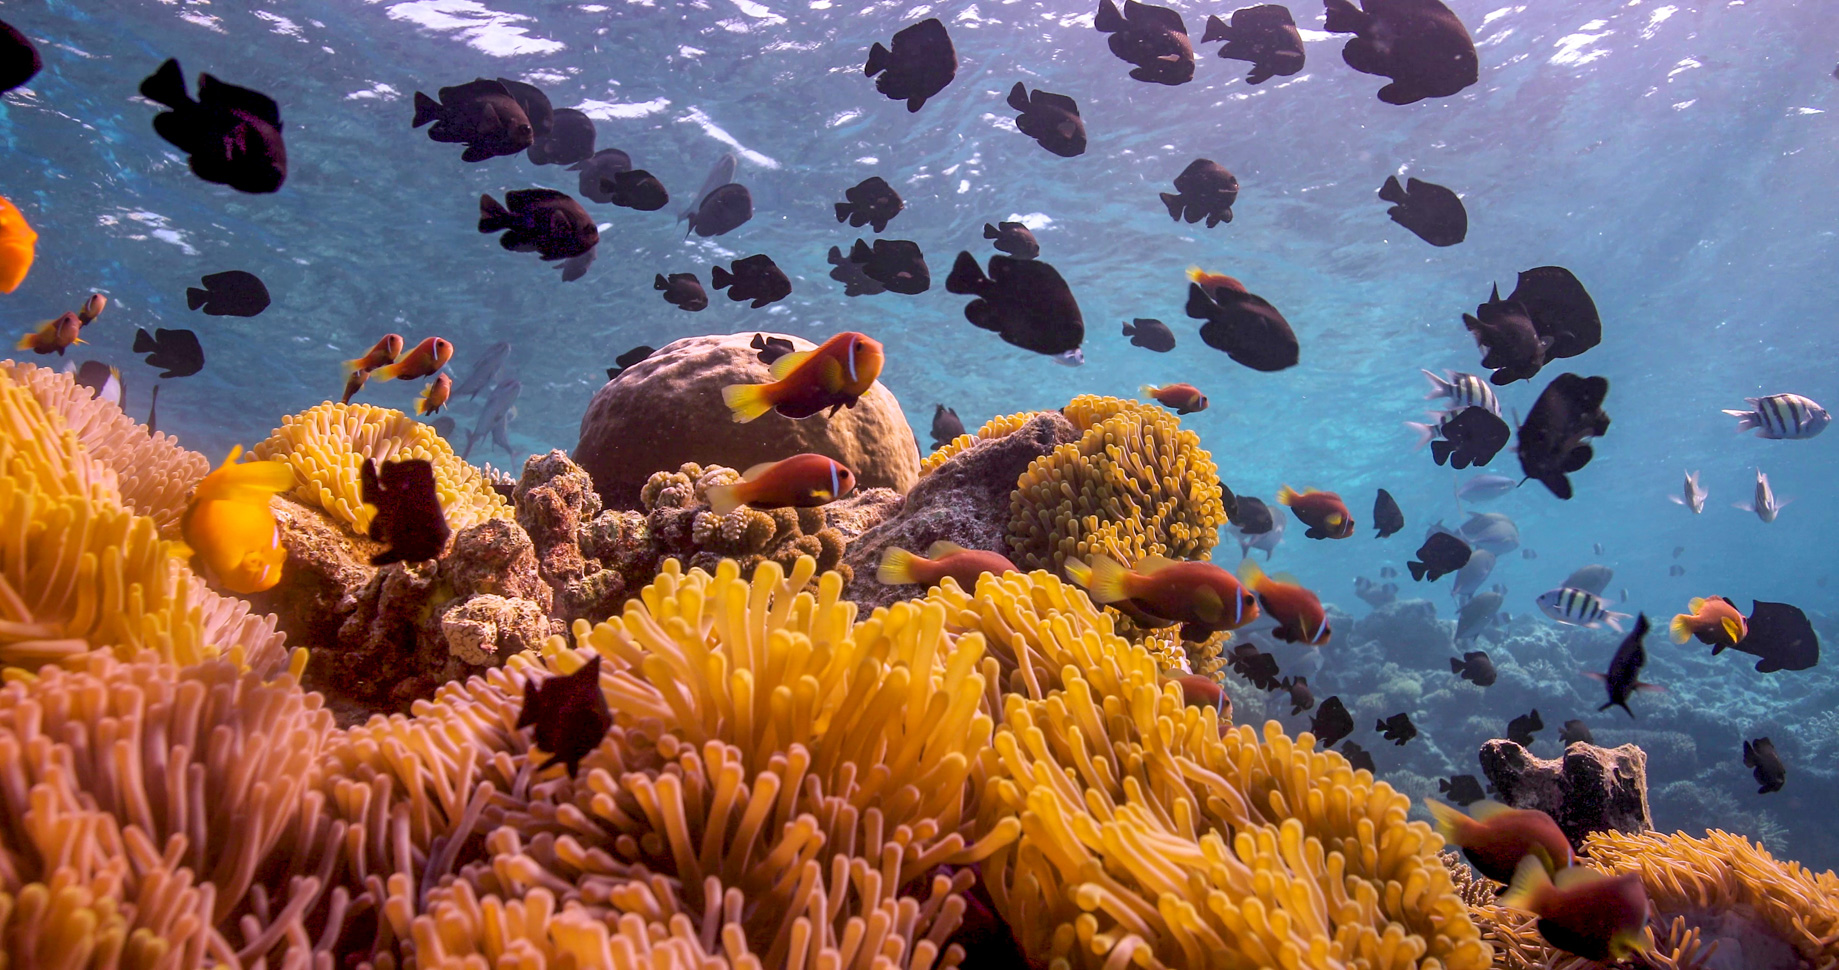 Anantara Kihavah Maldives Villas Resort – Baa Atoll, Maldives – House Reef Sea Anemone